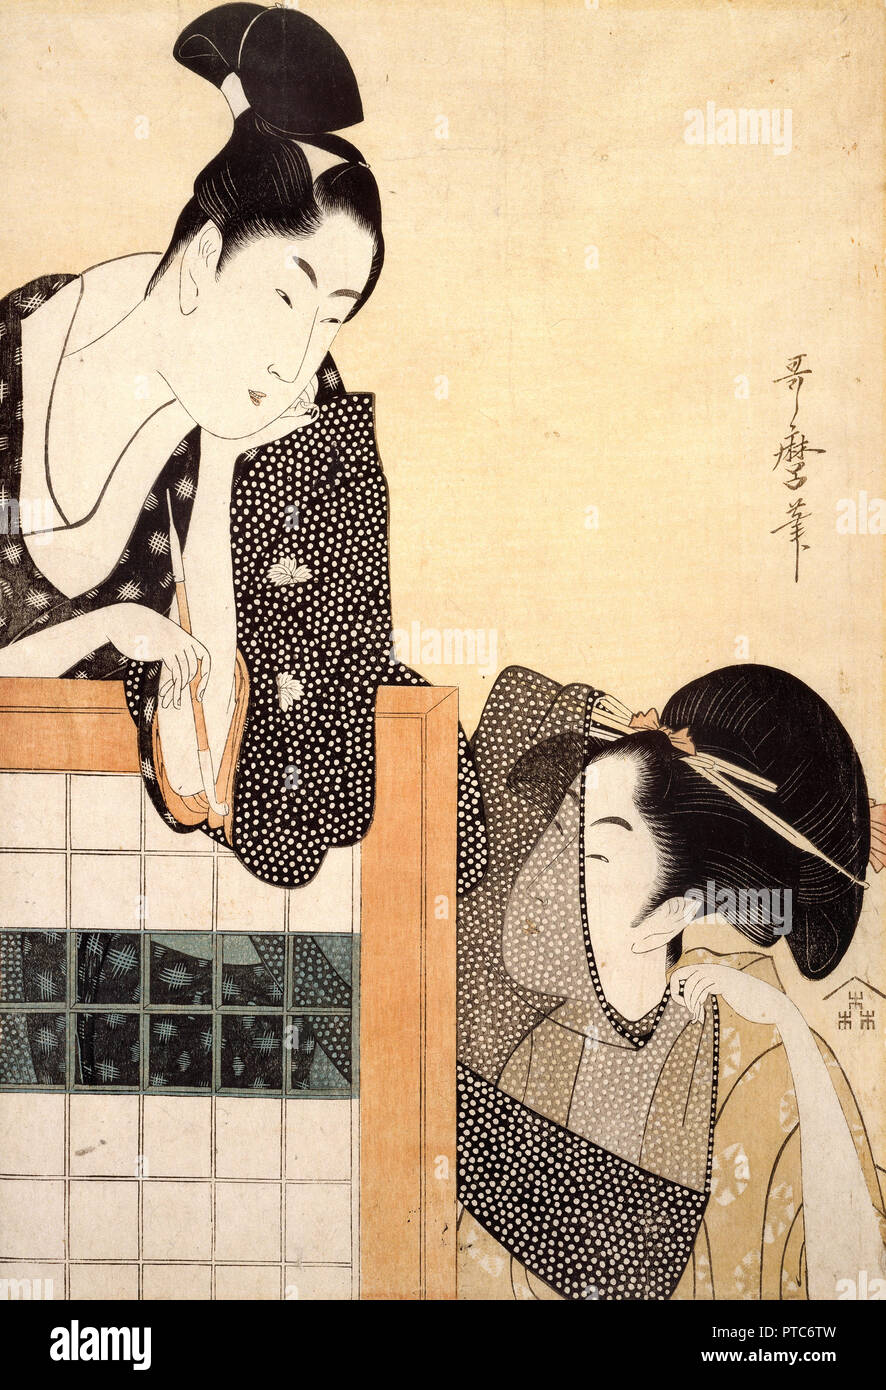 Kitagawa Utamaro, couple avec un écran permanent vers 1797, gravure sur bois, encre et couleur sur papier, Musée des beaux-arts de Boston, USA. Banque D'Images